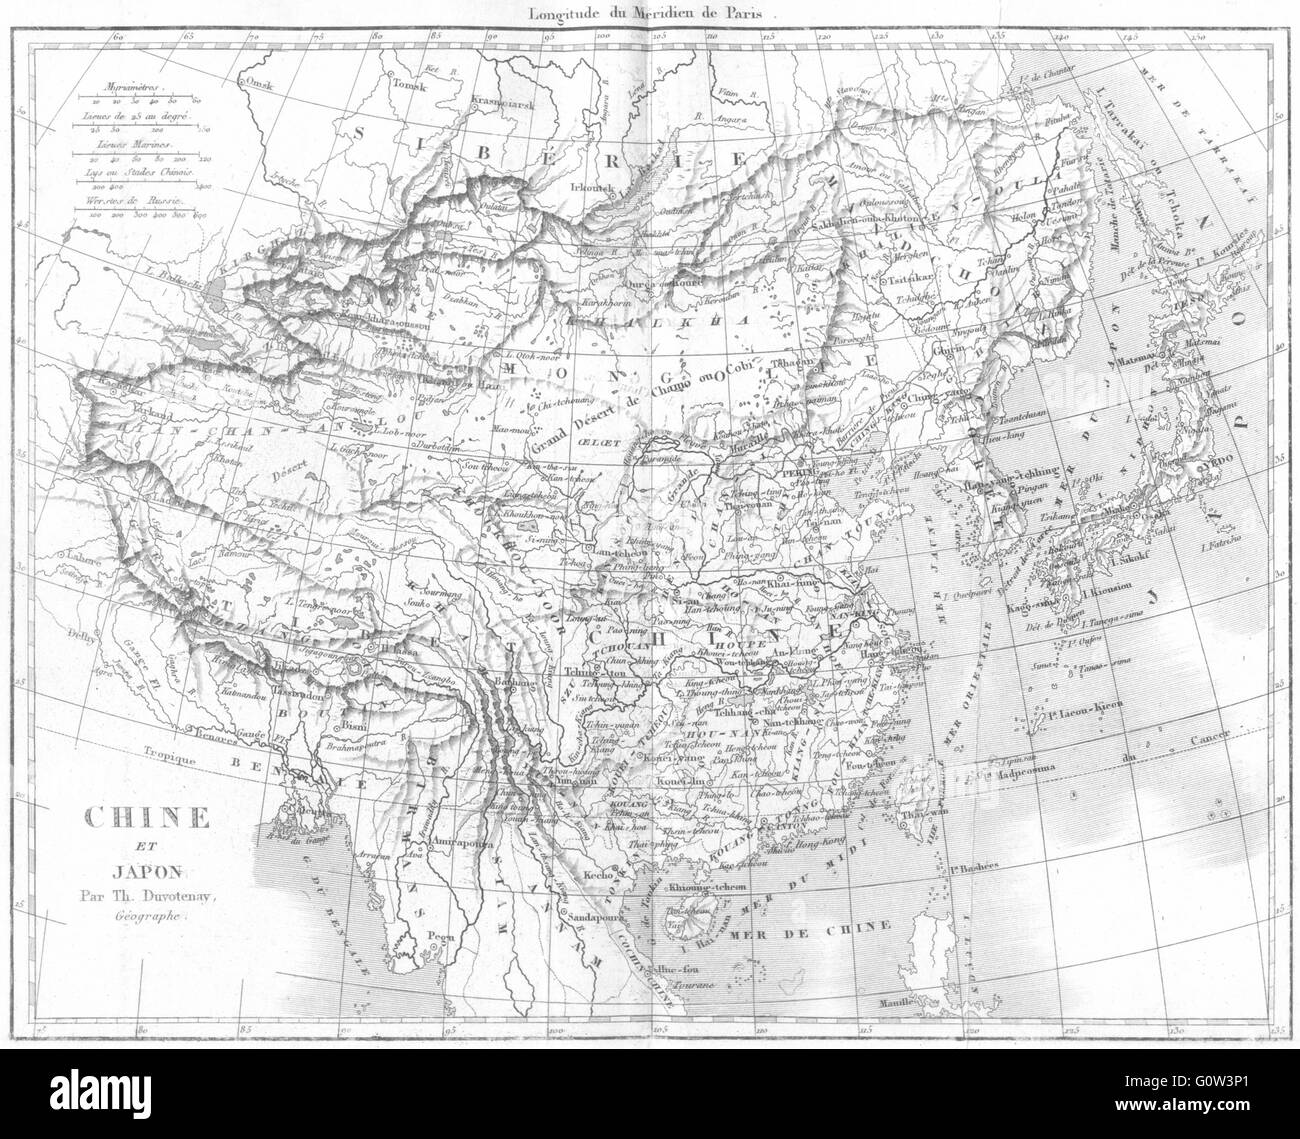 CHINA: Asie: Chine et Japon Japan, 1875 antike Karte Stockfoto